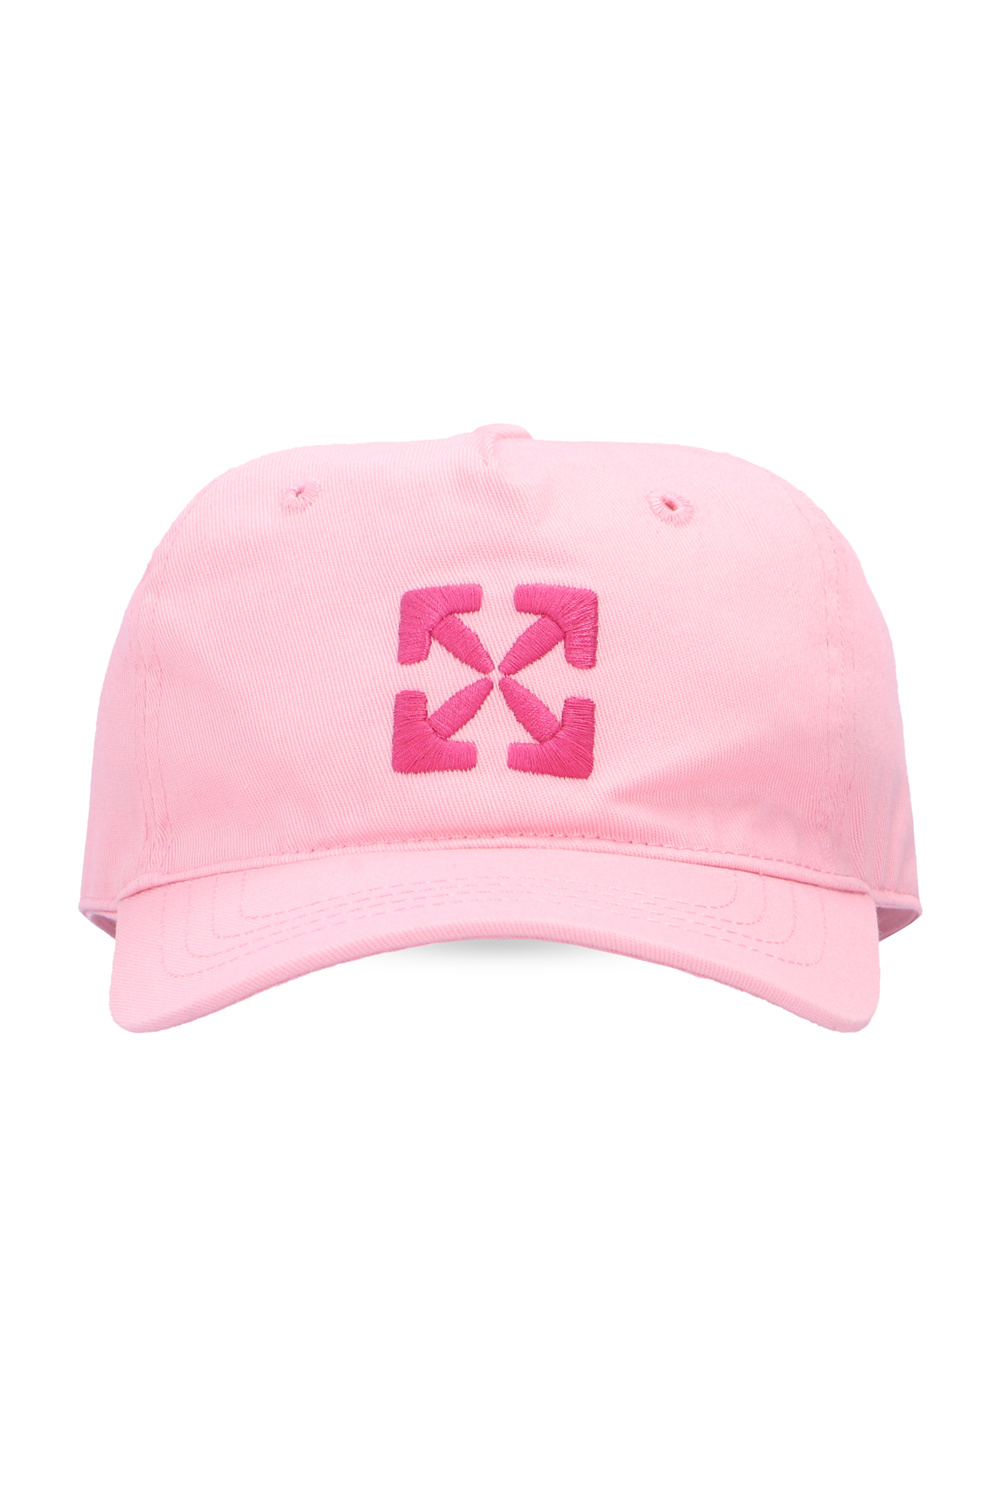 Diesel Kids logo-embroidered cotton cap - Pink